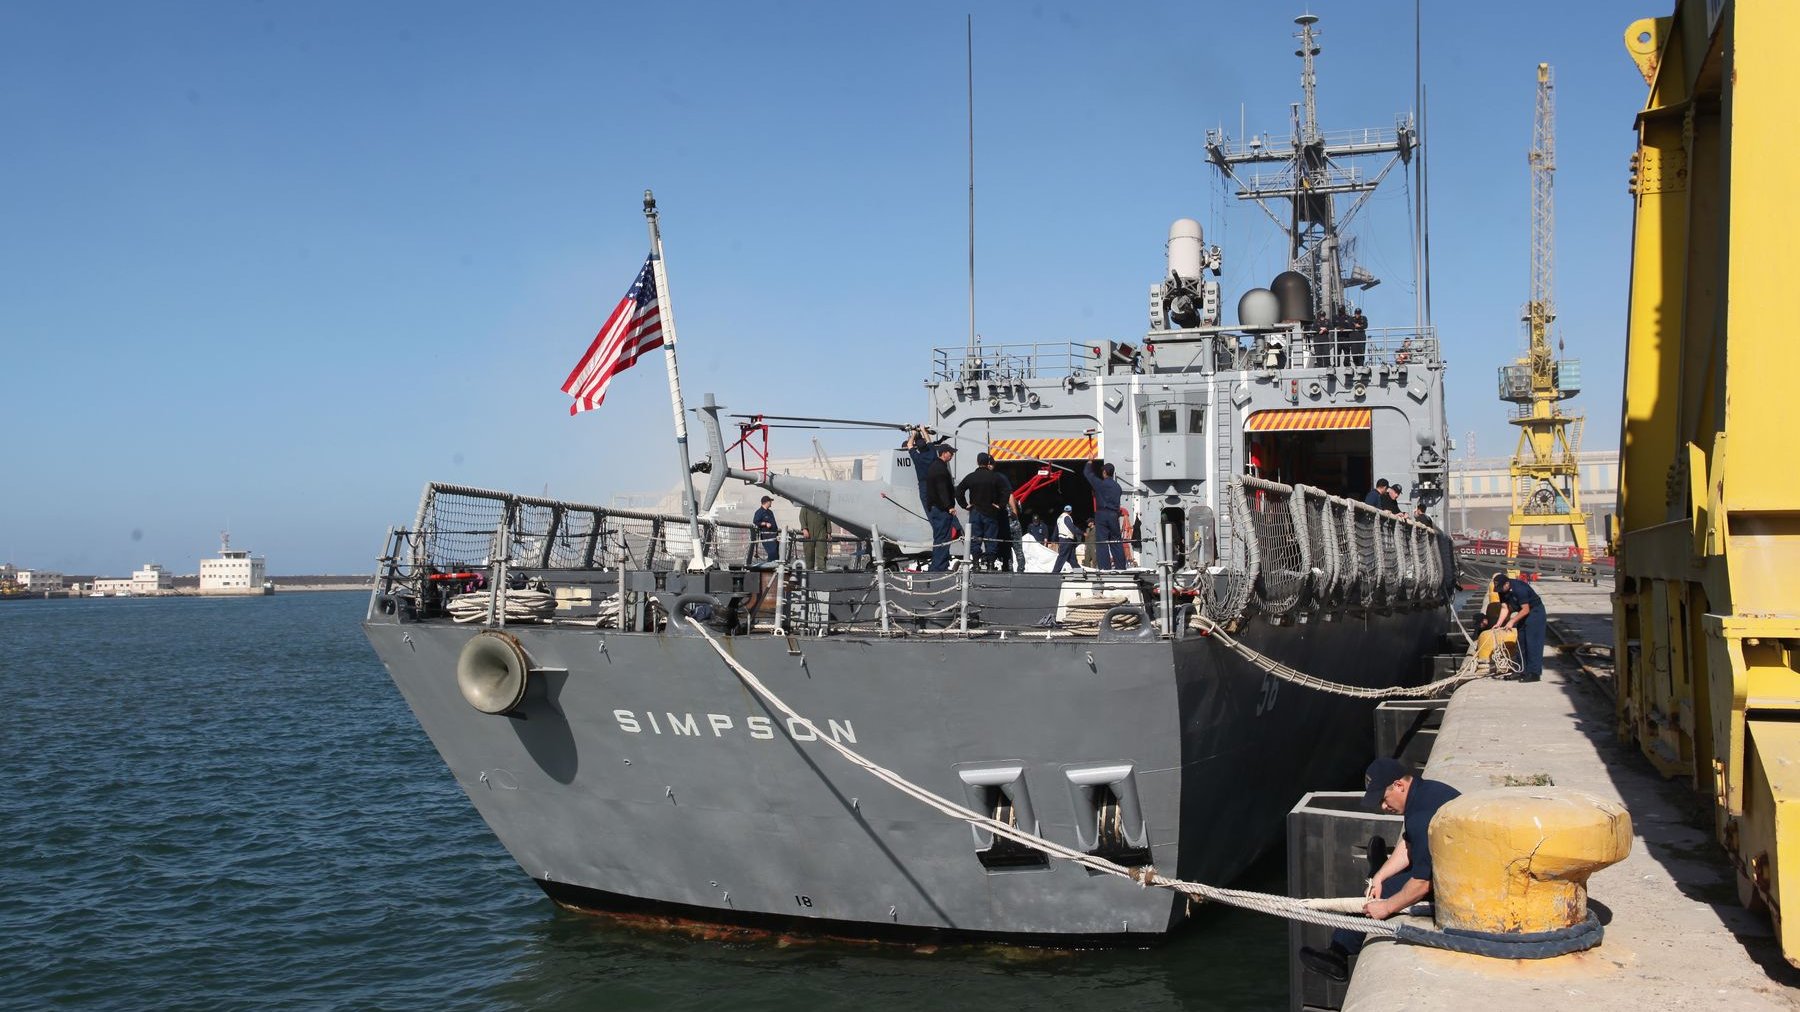 Le drapeau américain flotte sur la frégate trônant sur les eaux de l'Atlantique. 
